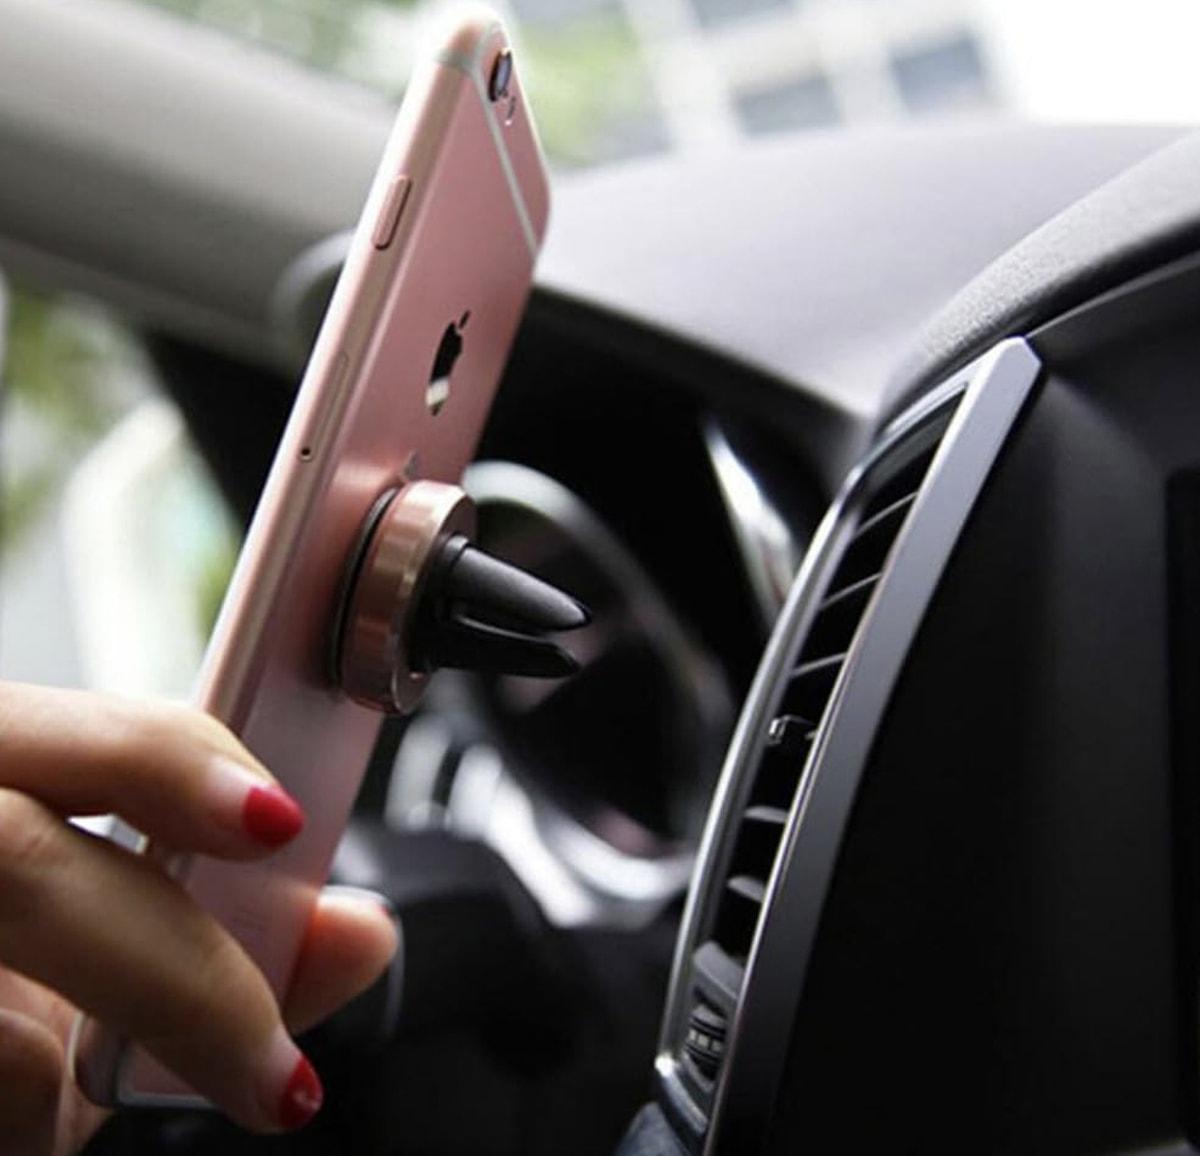 Premium Araç Telefon Tutucu, araç içinde geçirdiğiniz zamanı daha keyifli ve konforlu hale getirecek.